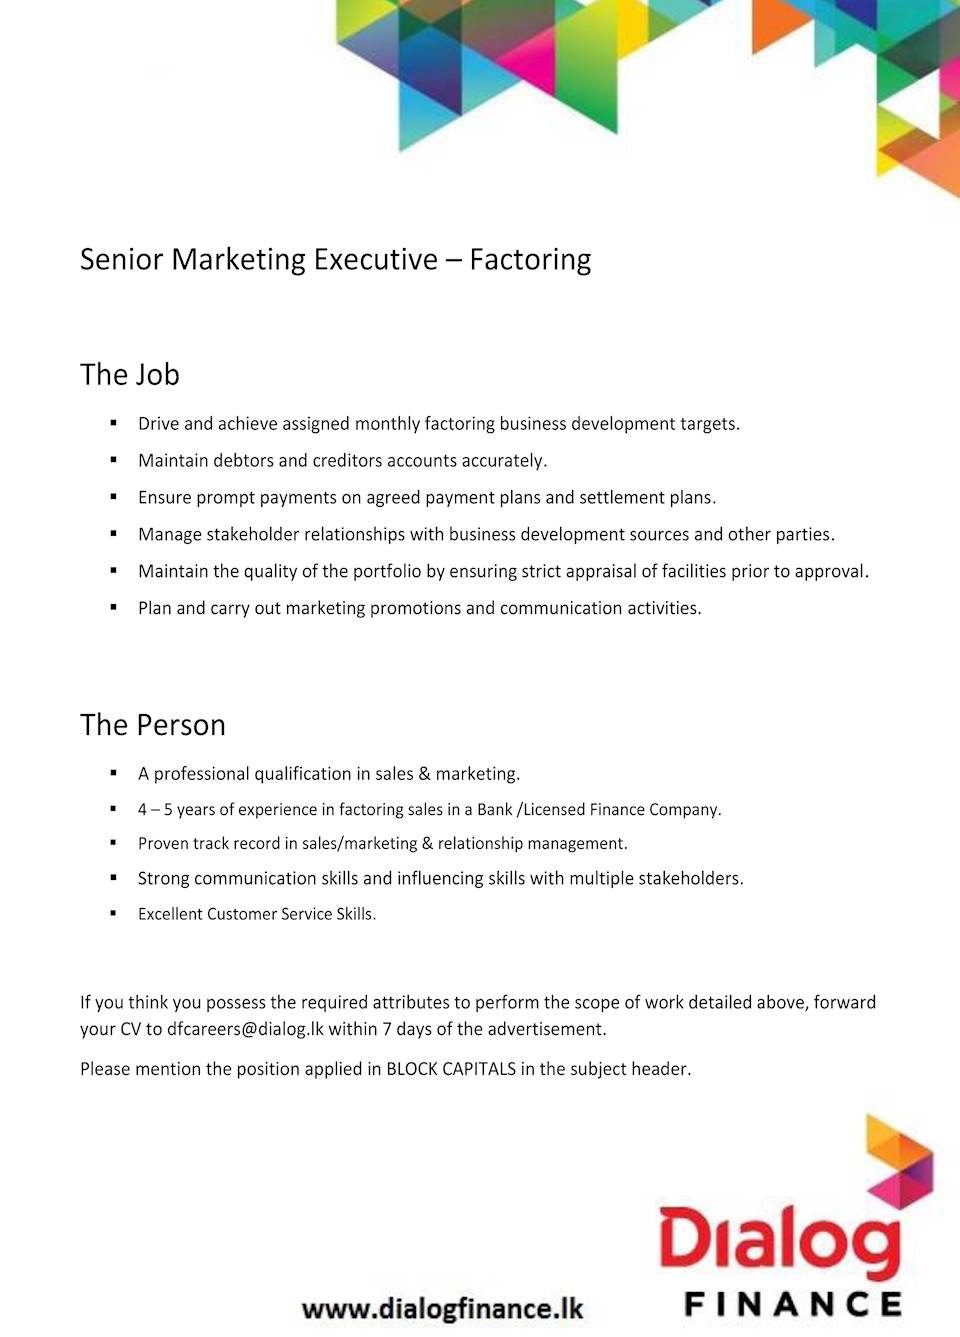 Senior Marketing Executive - Factoring